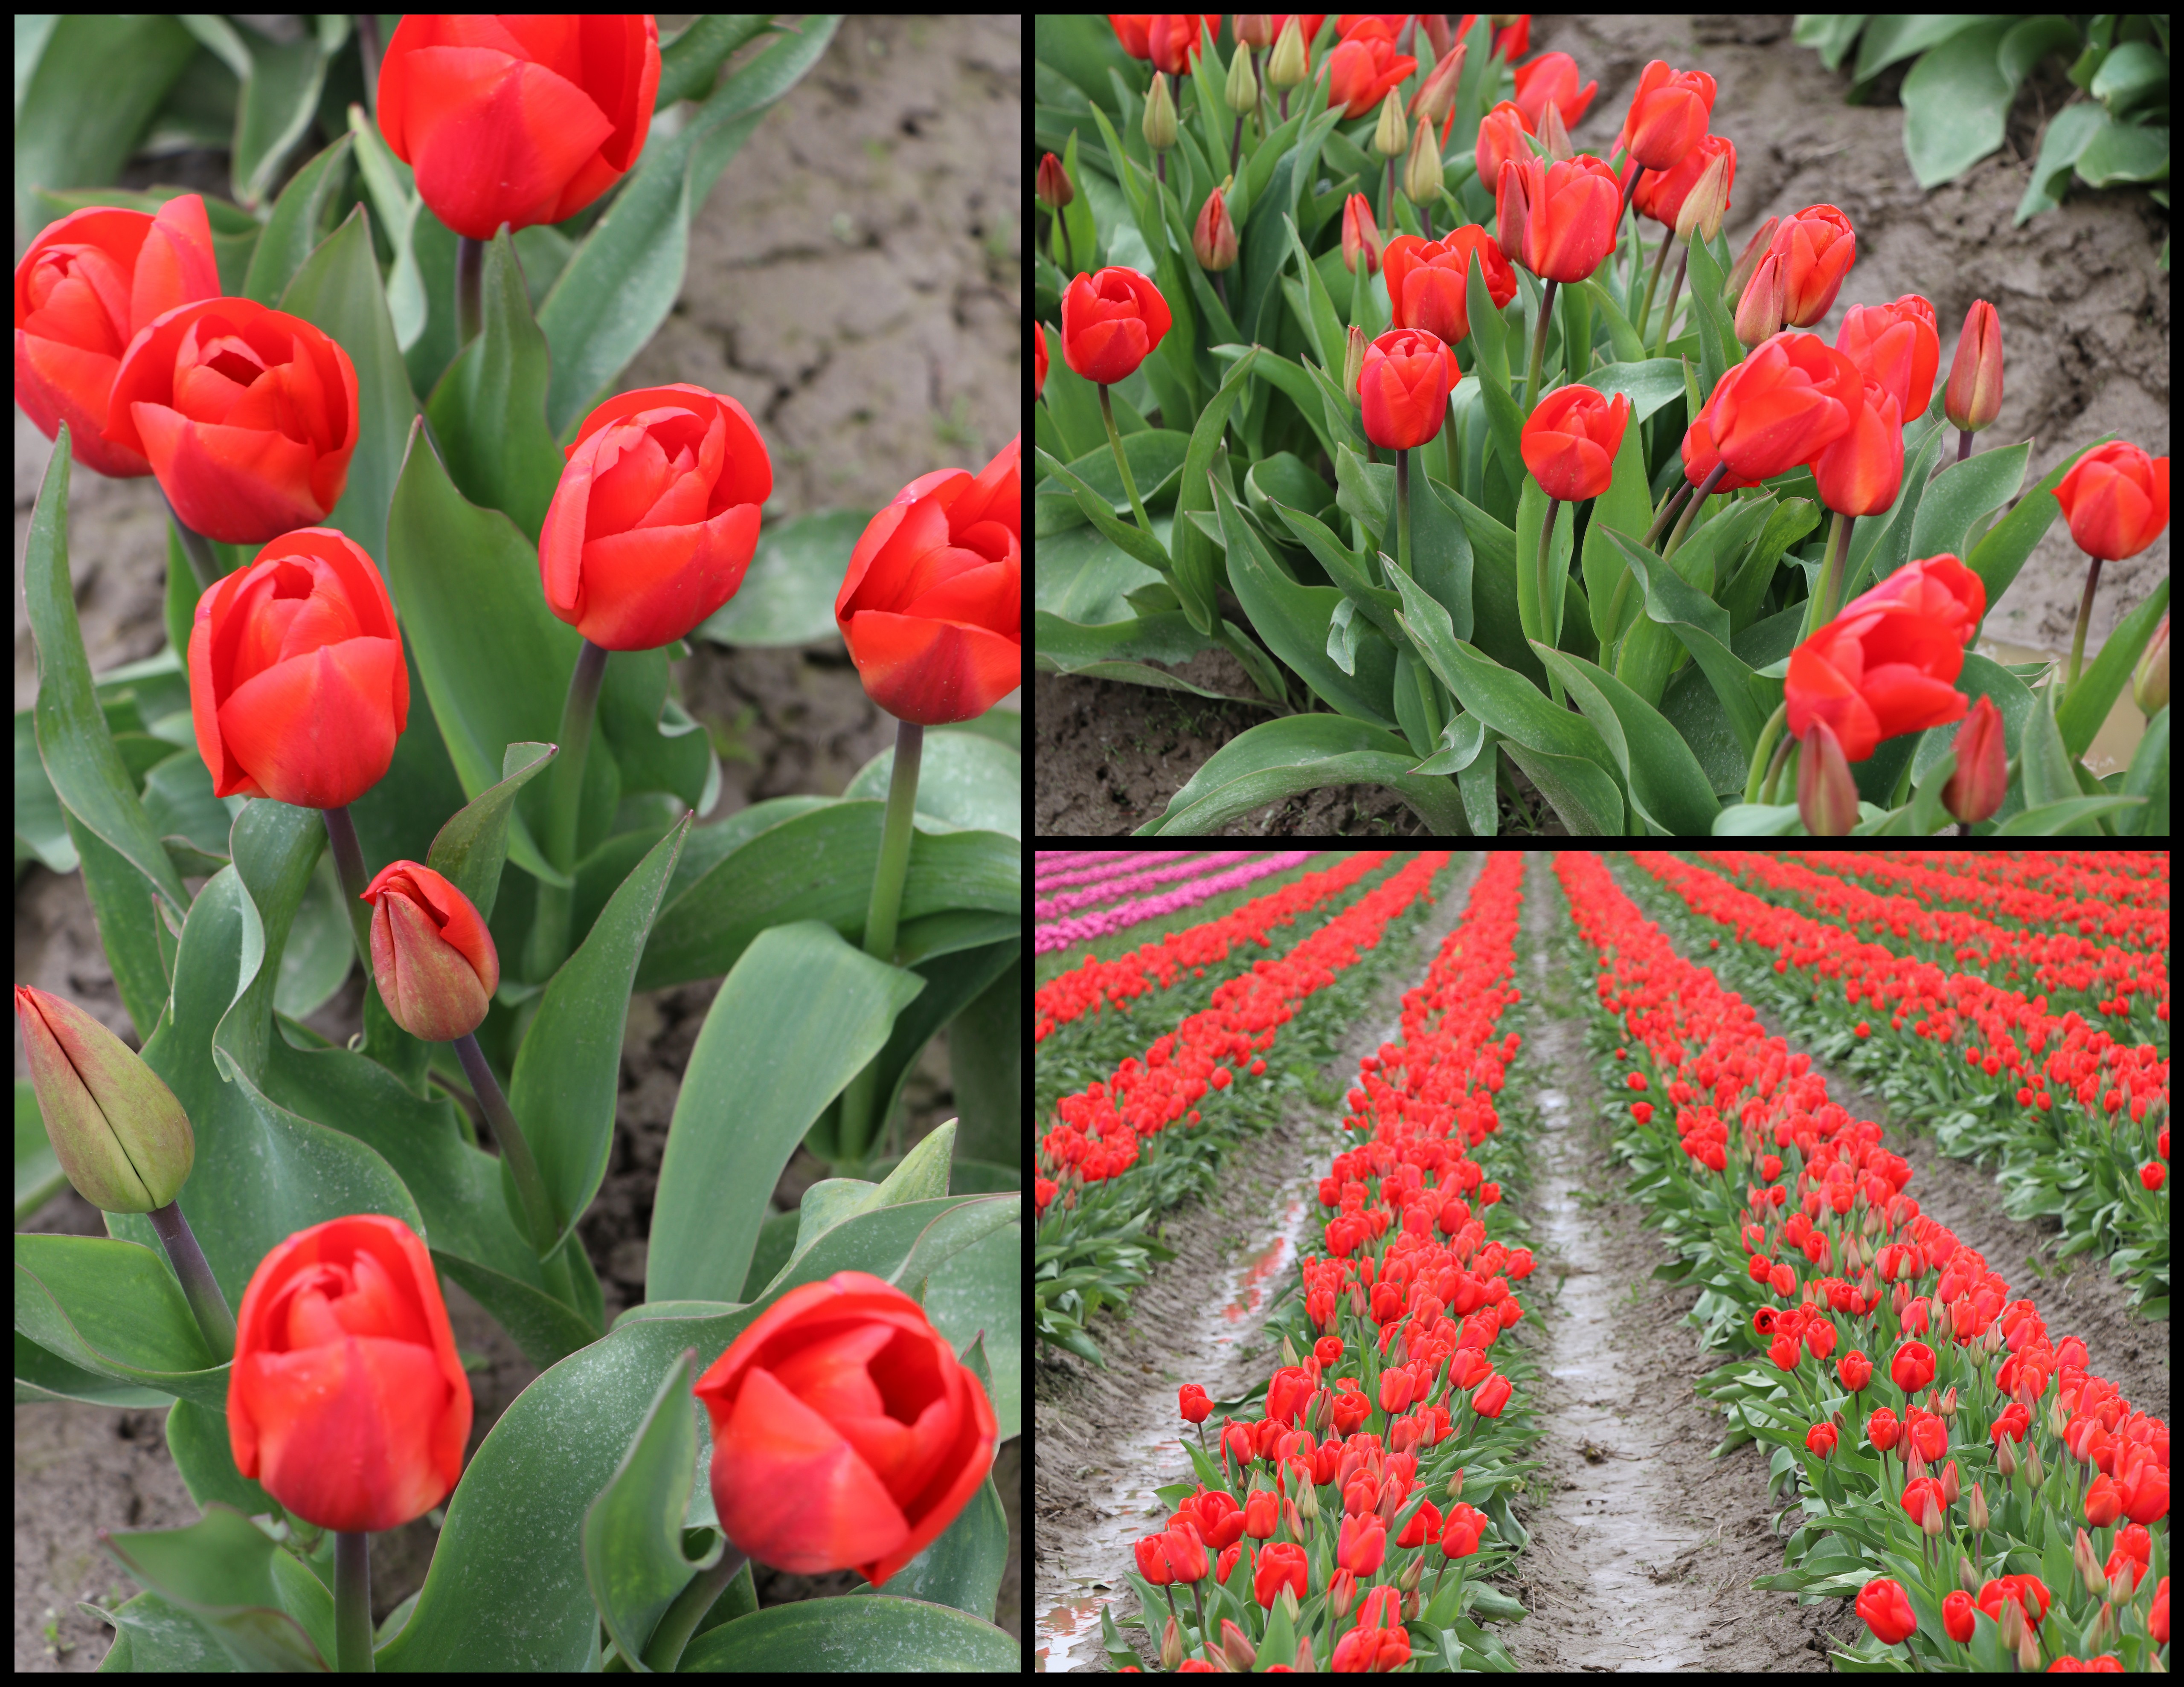 Tulips | The Happy Wonderer ~ ellen b.